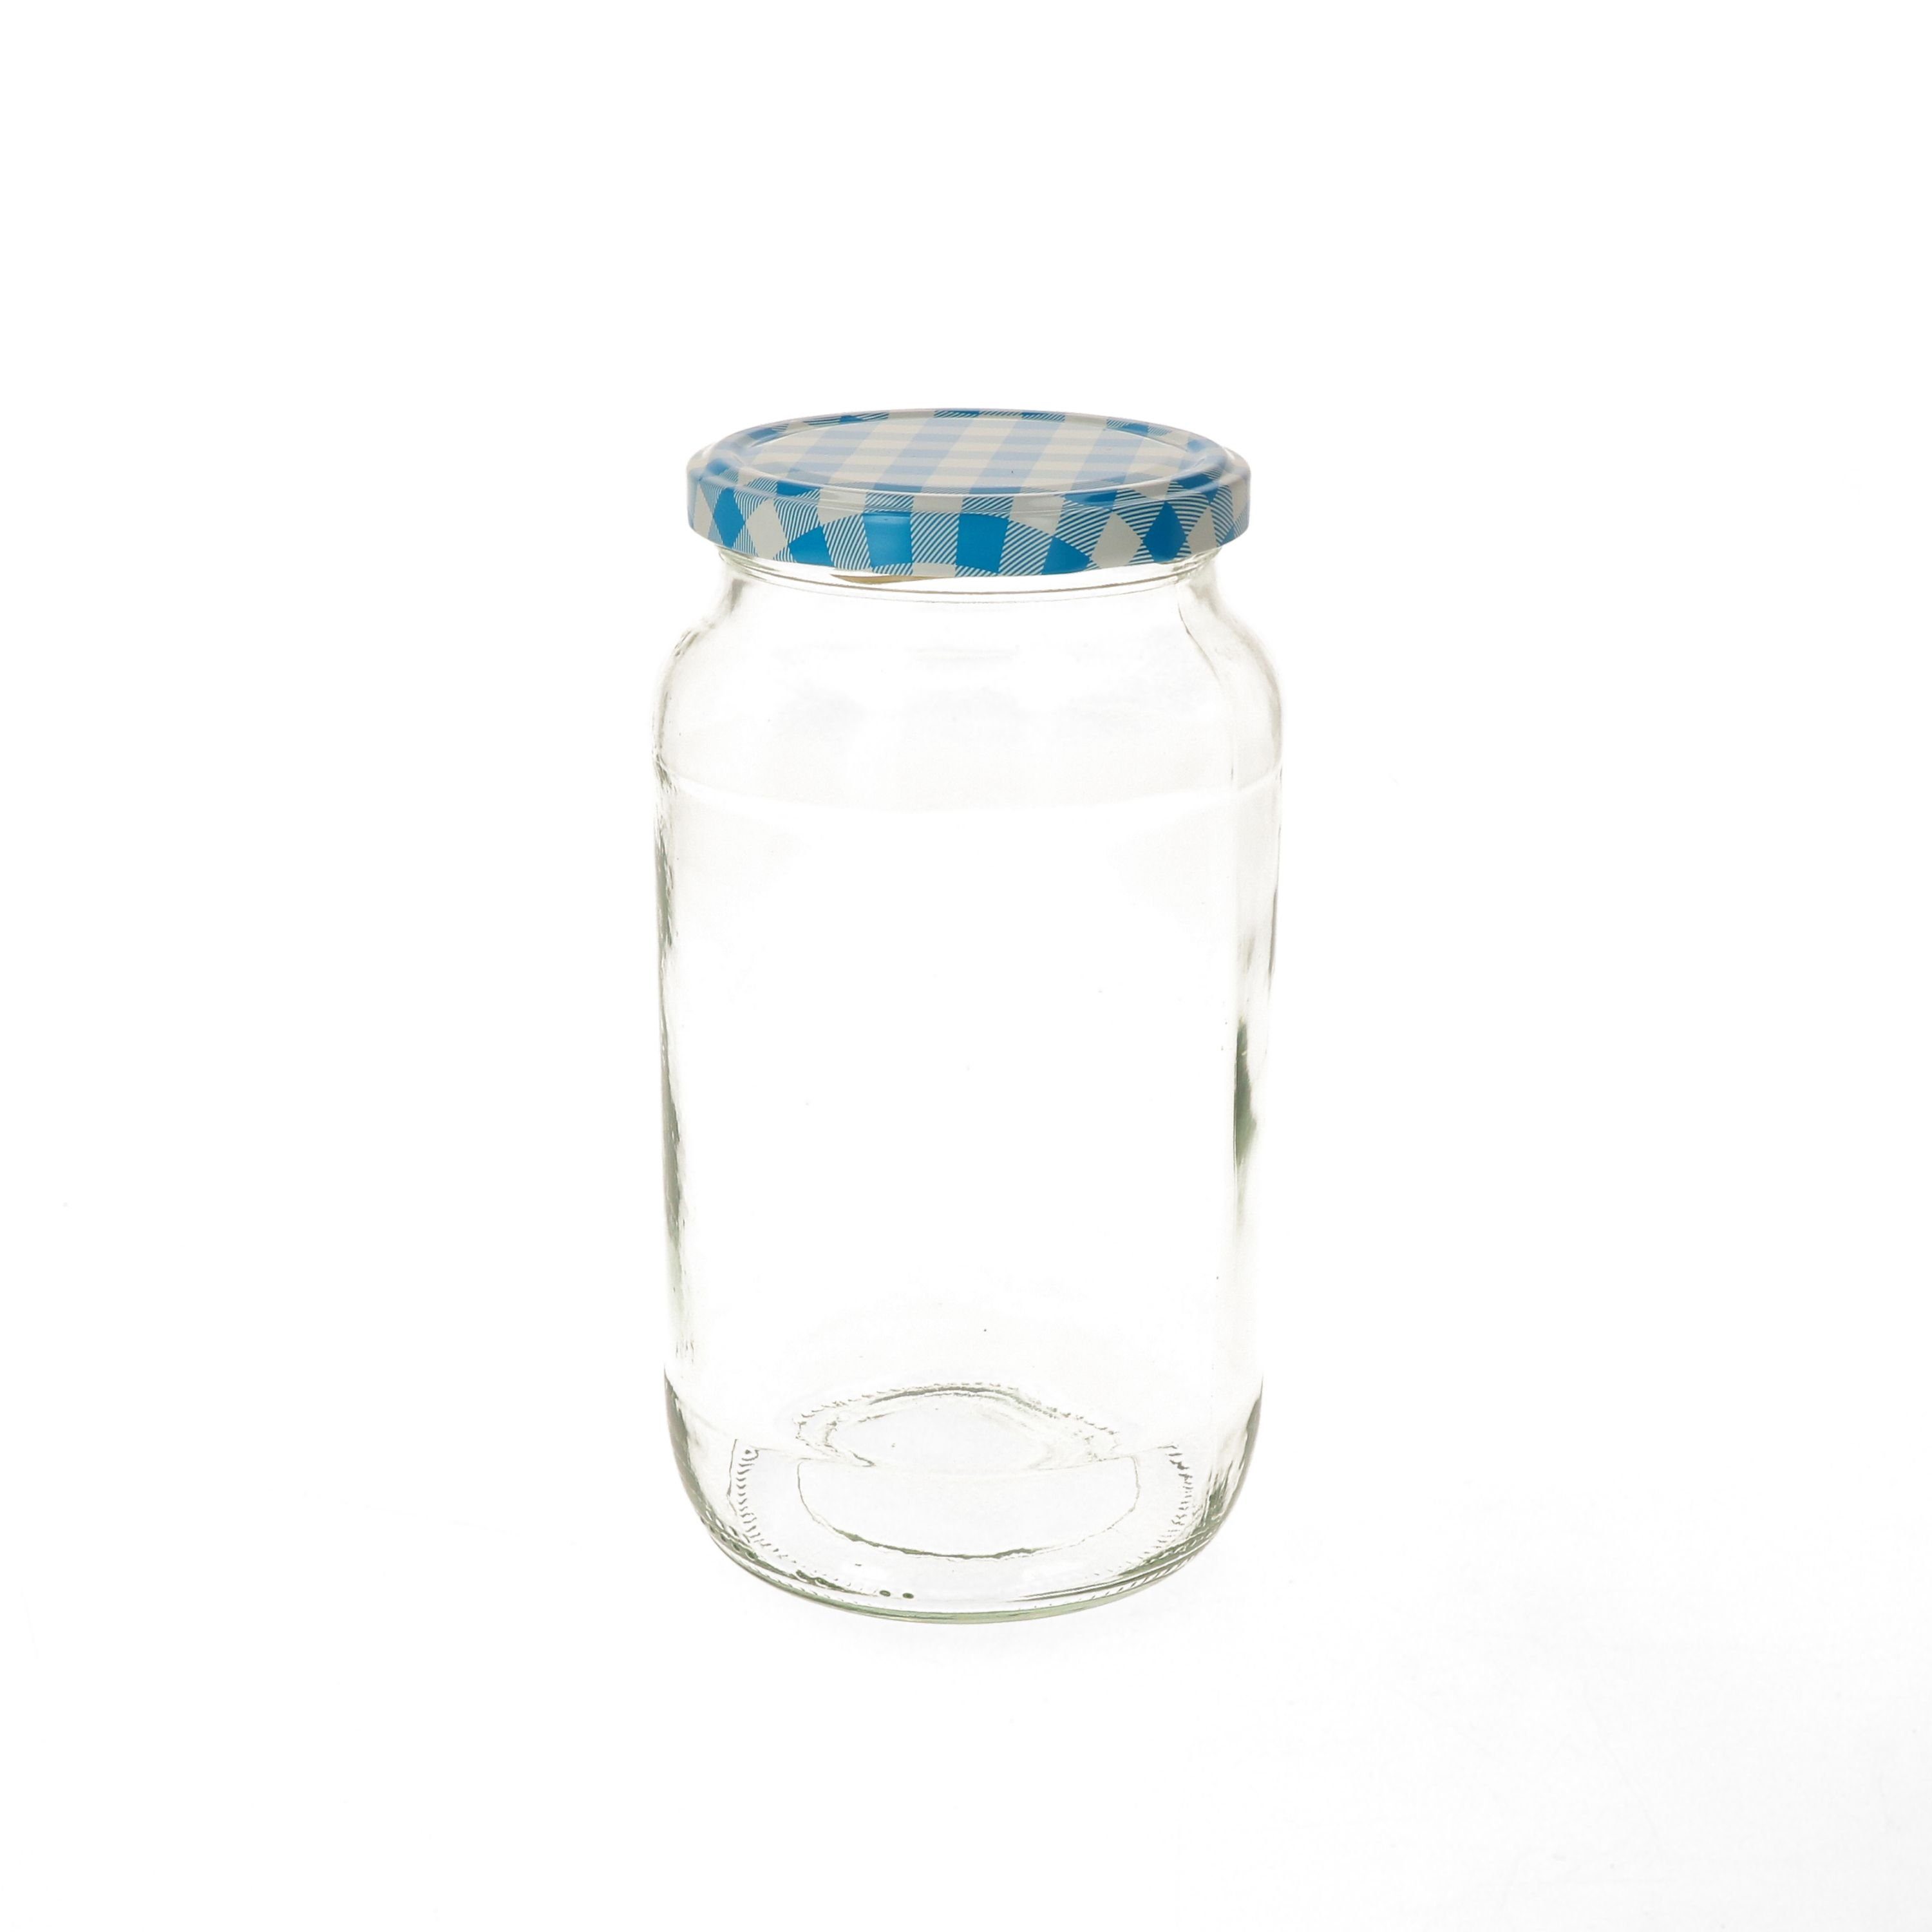 To 12er incl. karierter Glas blau 1062 82 Rundglas Rezeptheft, MamboCat ml Set Einmachglas Deckel